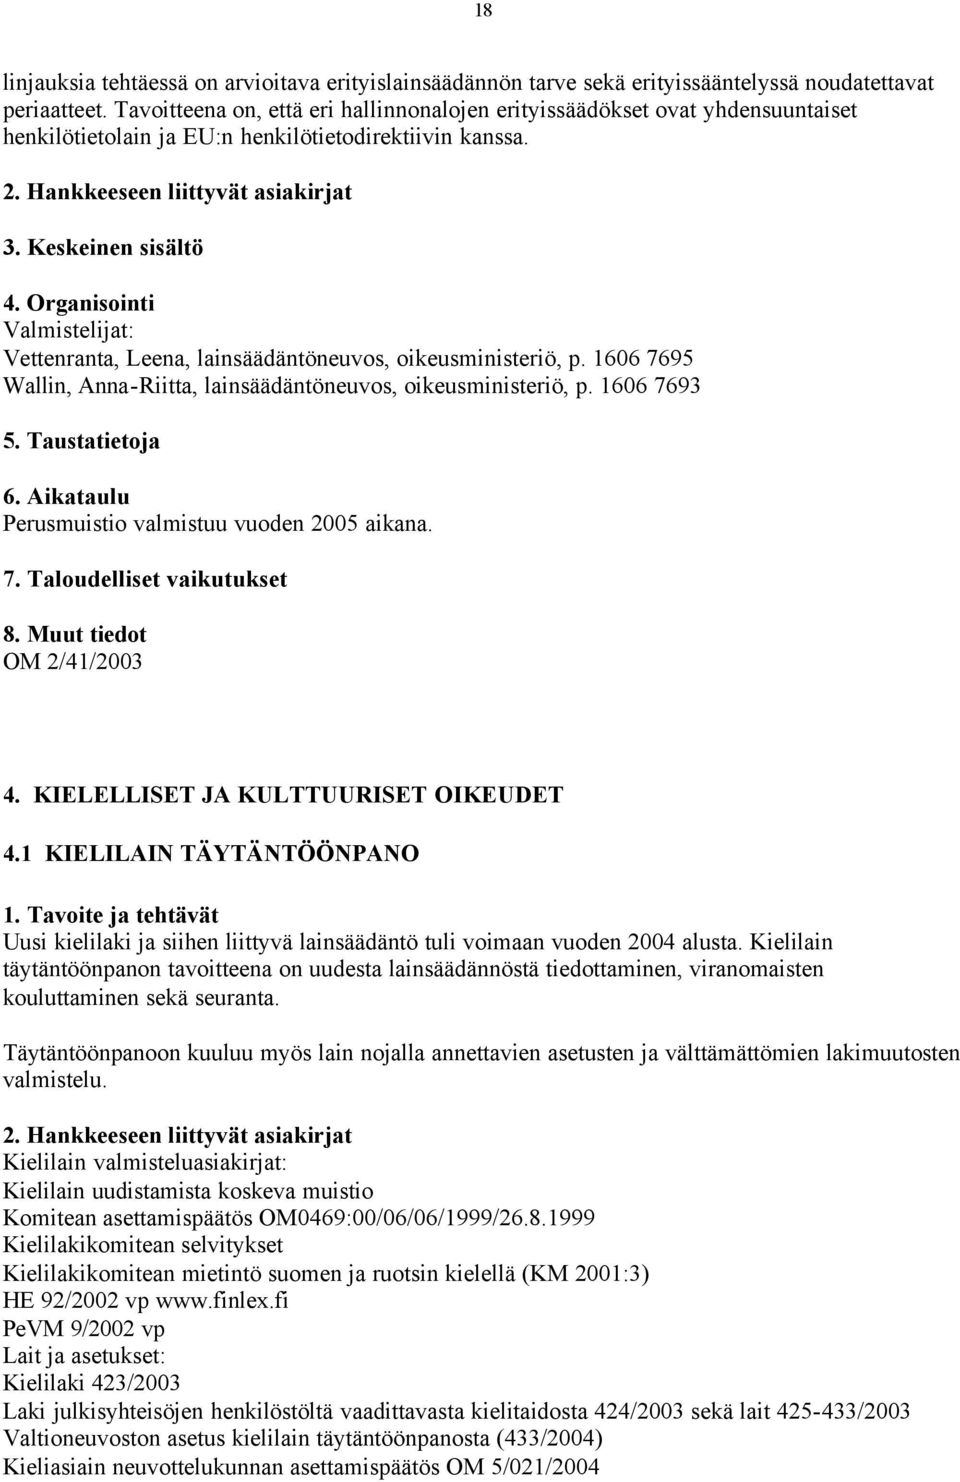 Valmistelijat: Vettenranta, Leena, lainsäädäntöneuvos, oikeusministeriö, p. 1606 7695 Wallin, Anna-Riitta, lainsäädäntöneuvos, oikeusministeriö, p. 1606 7693 Perusmuistio valmistuu vuoden 2005 aikana.